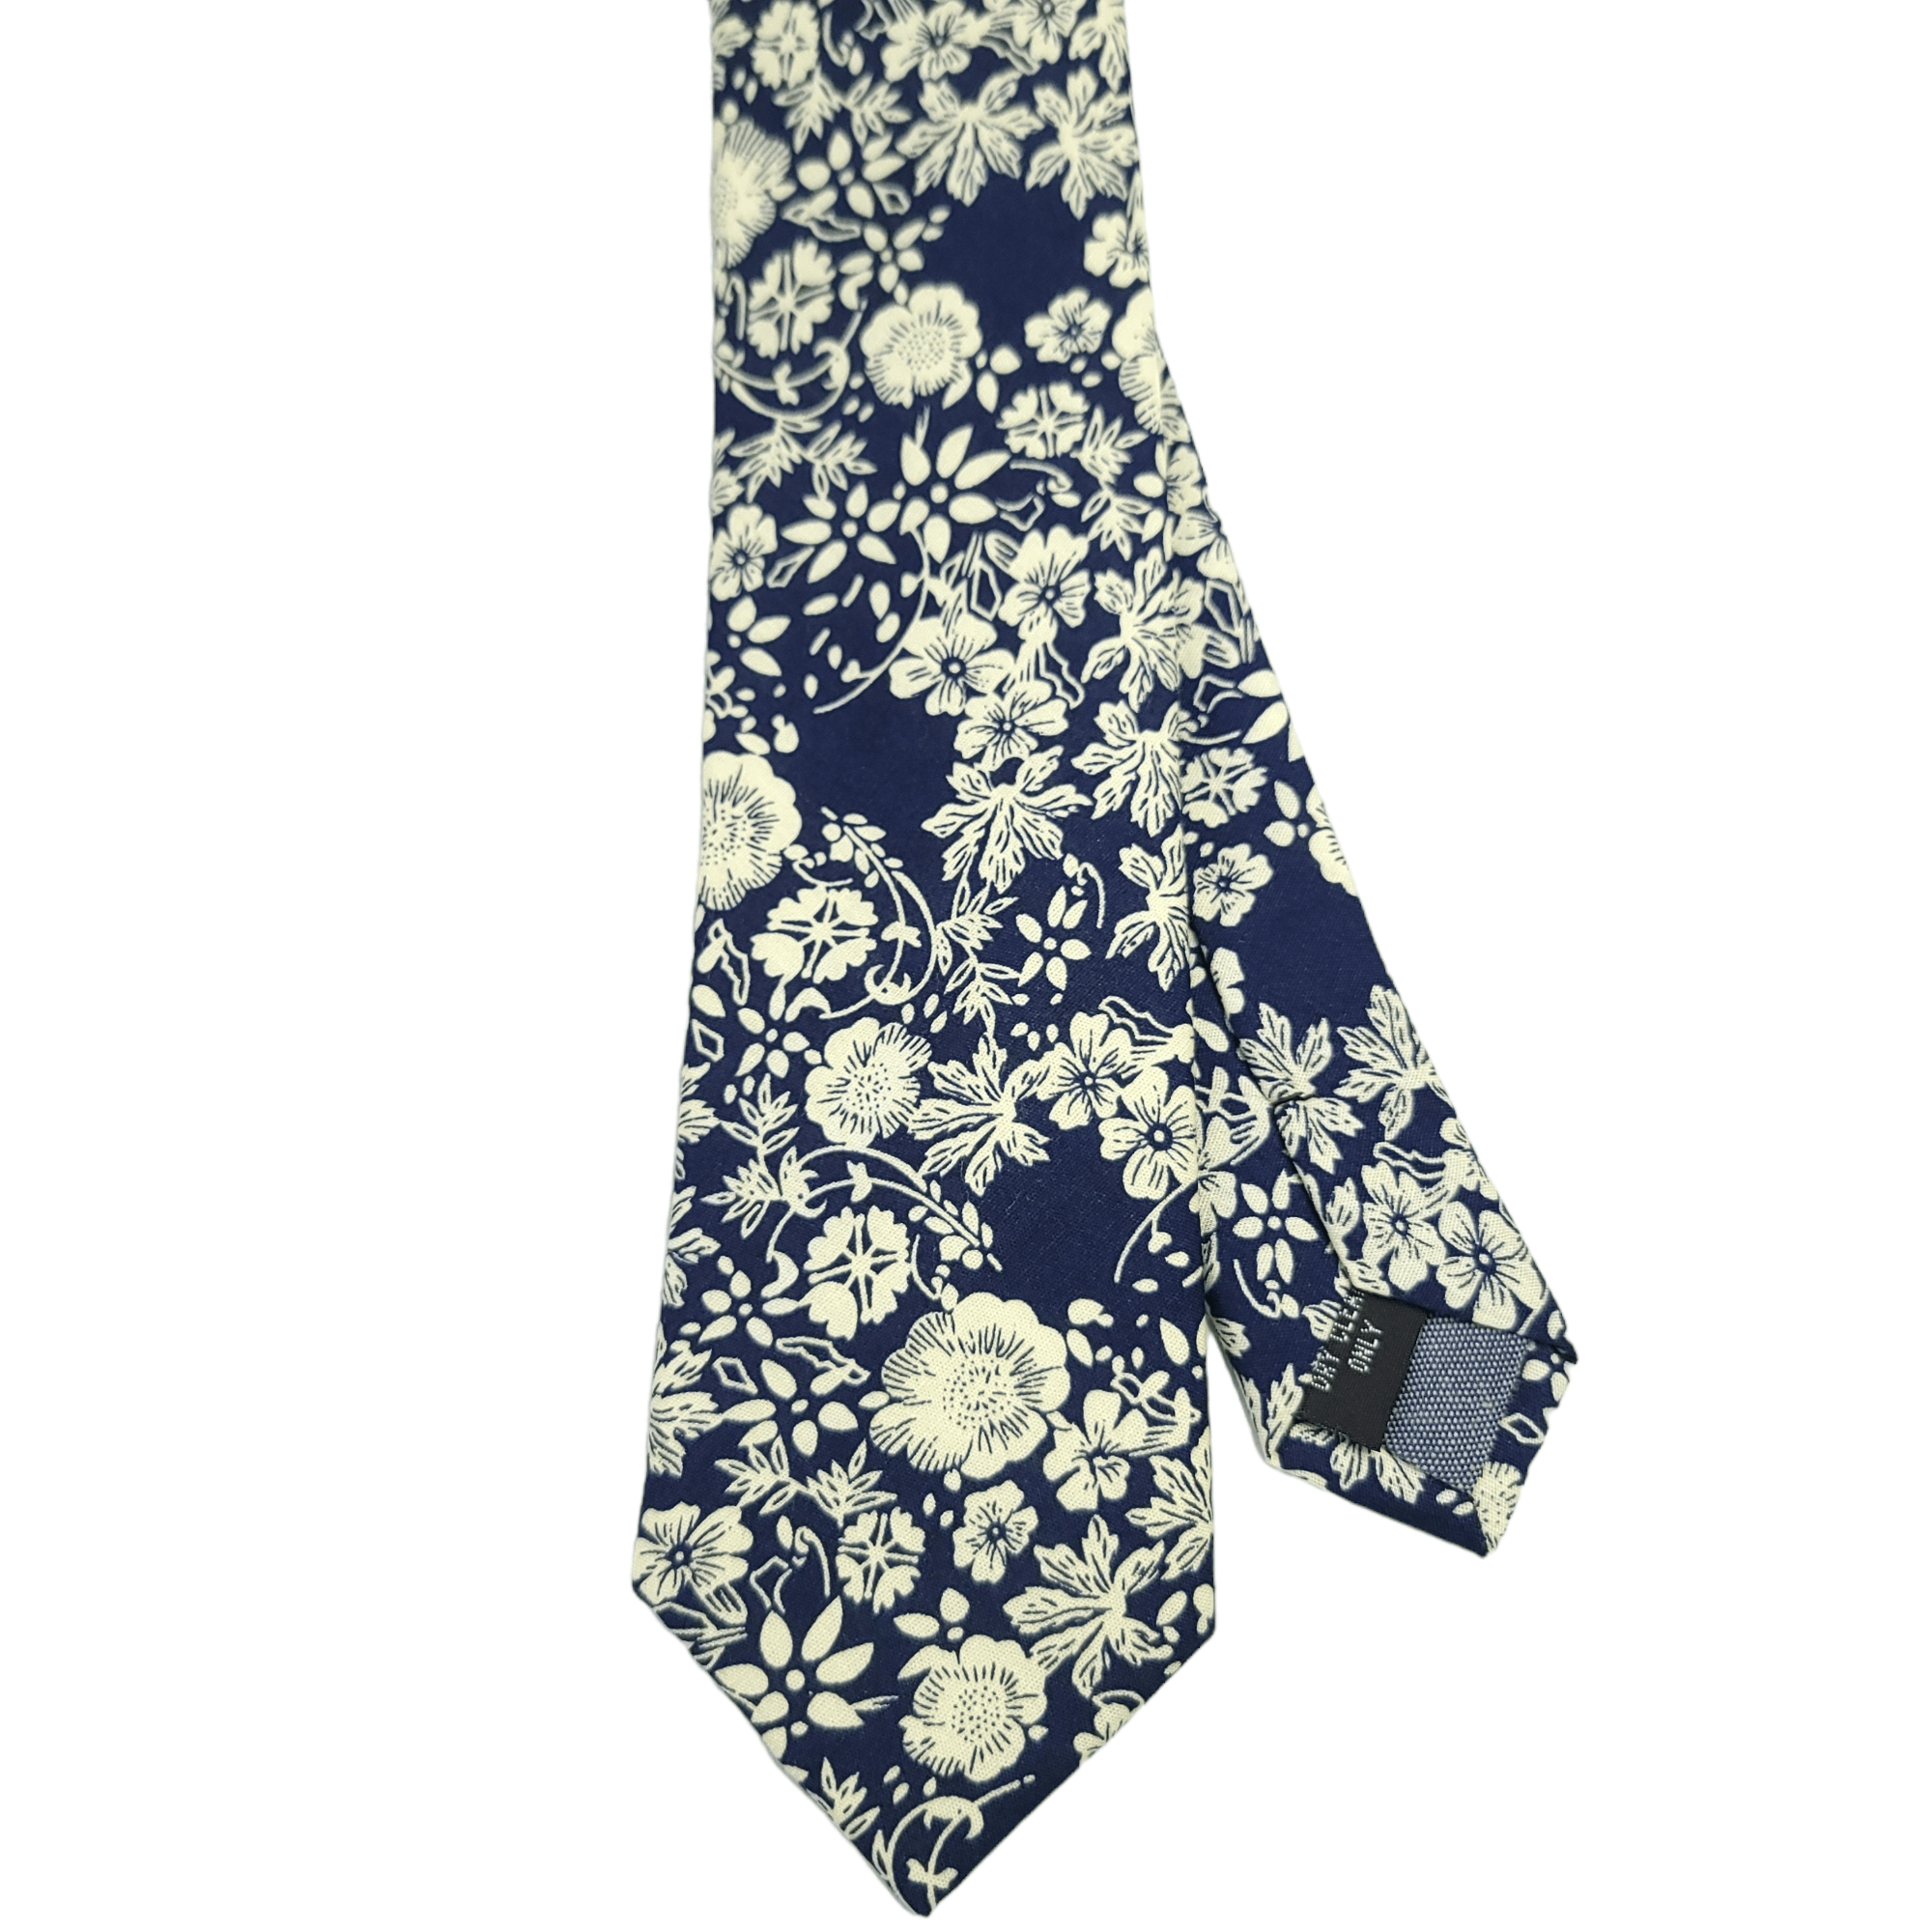 Navy Blue White Floral Slim Tie - STYLETIE